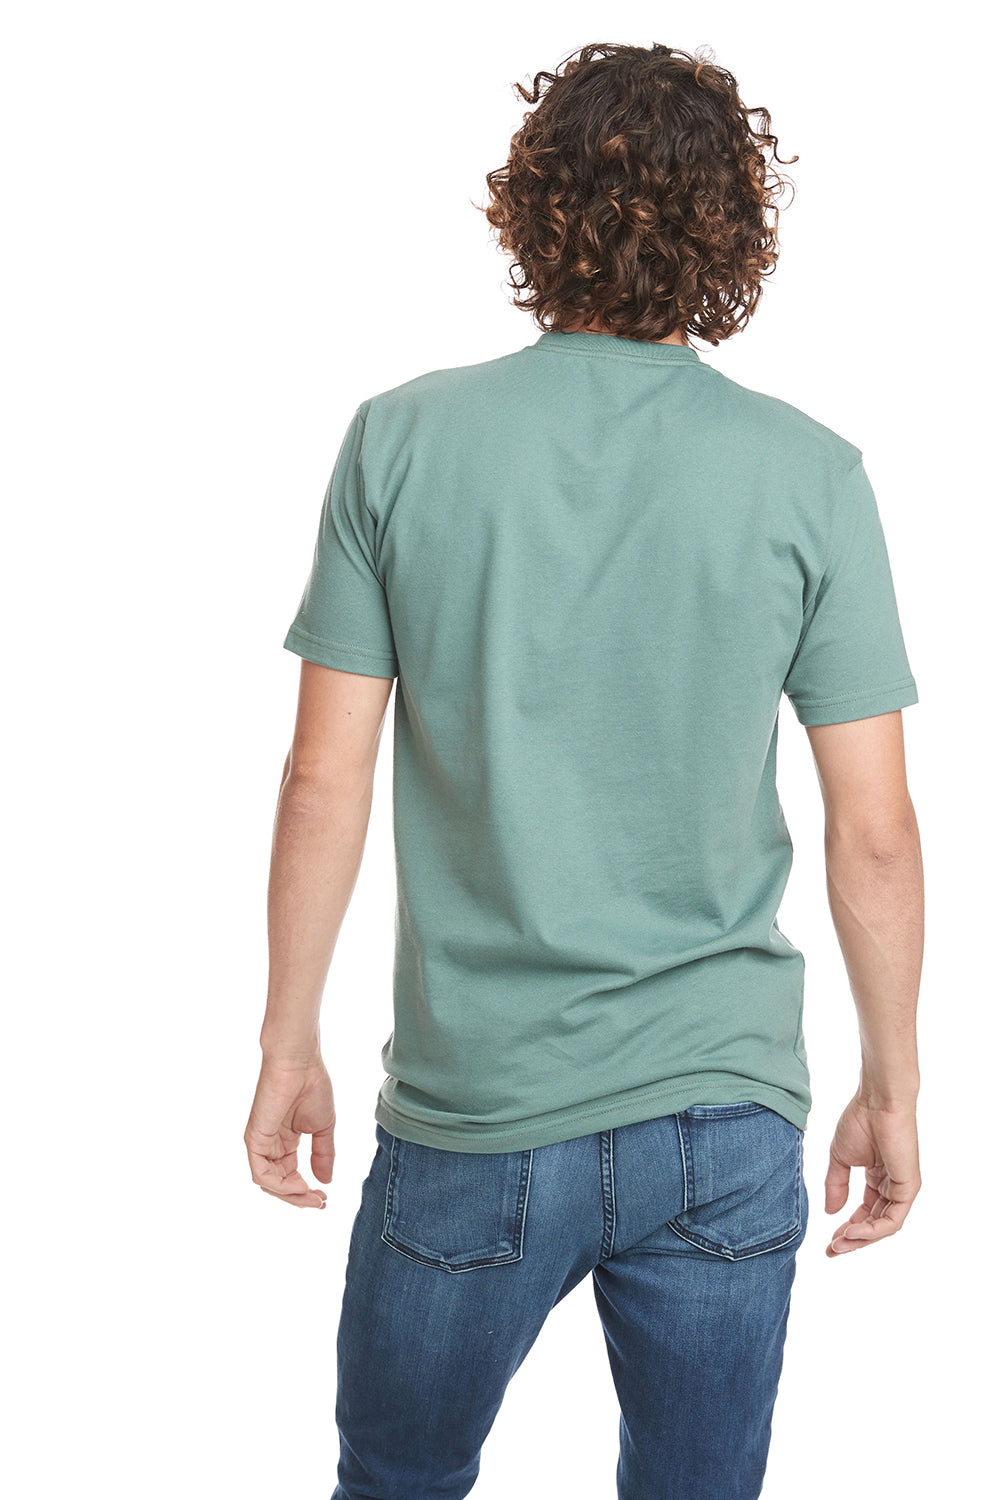 Next Level 4210 - Unisex Eco Performance T-Shirt